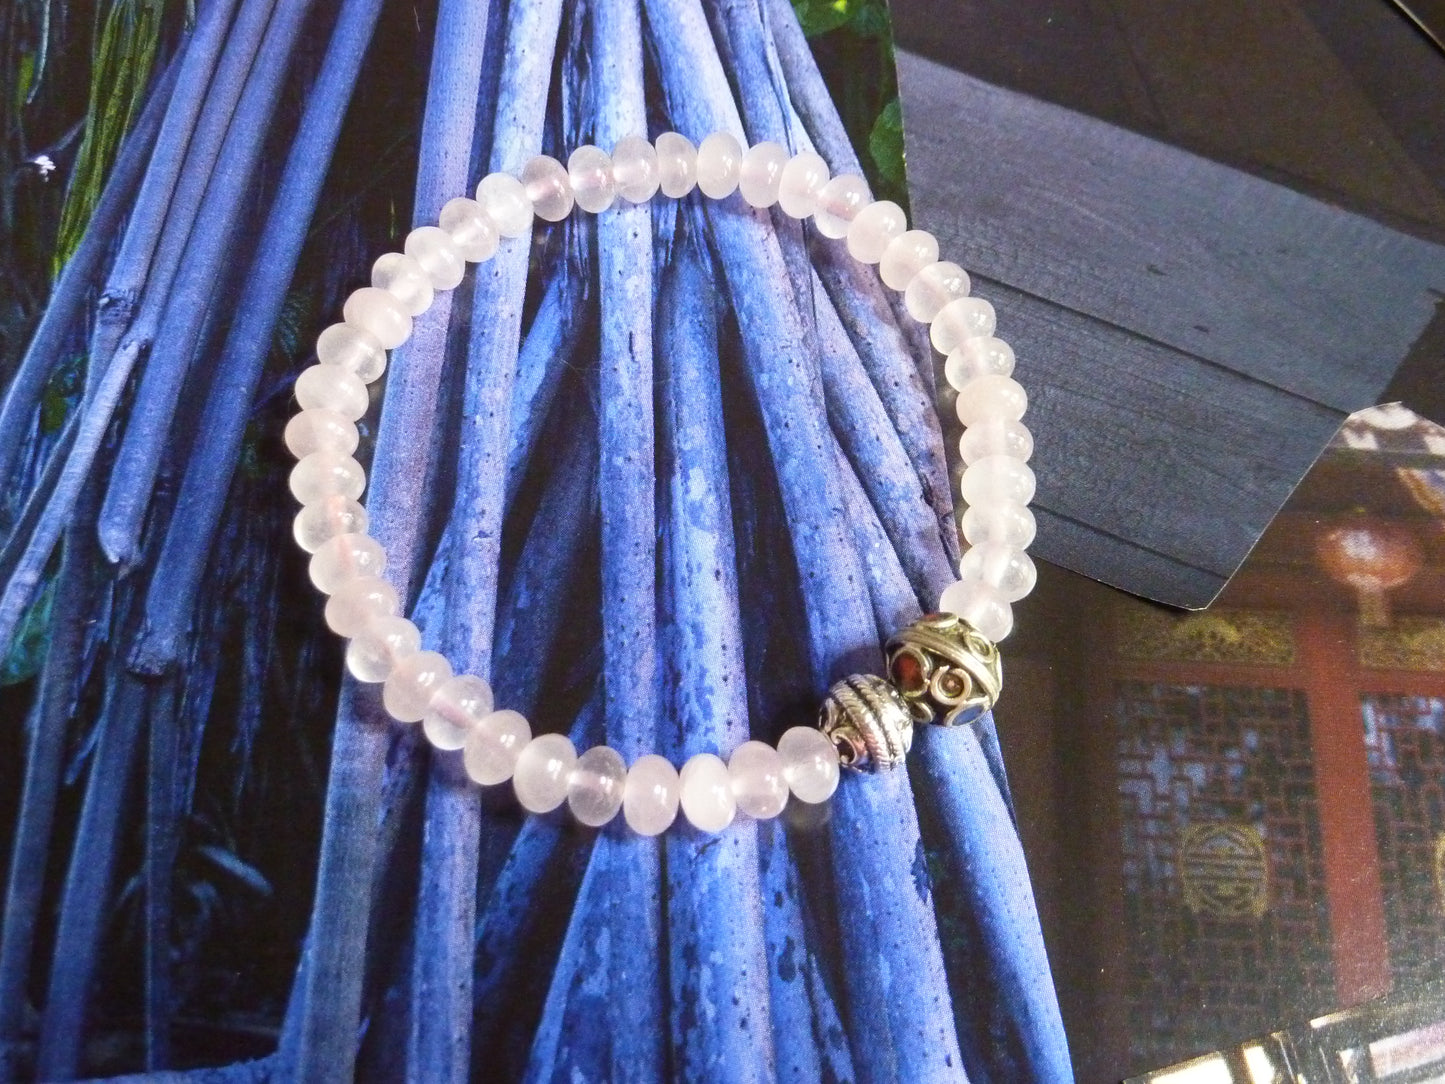 Délicat bracelet de quartz rose et perles ethniques - chakra du coeur réconfort, douceur, paix